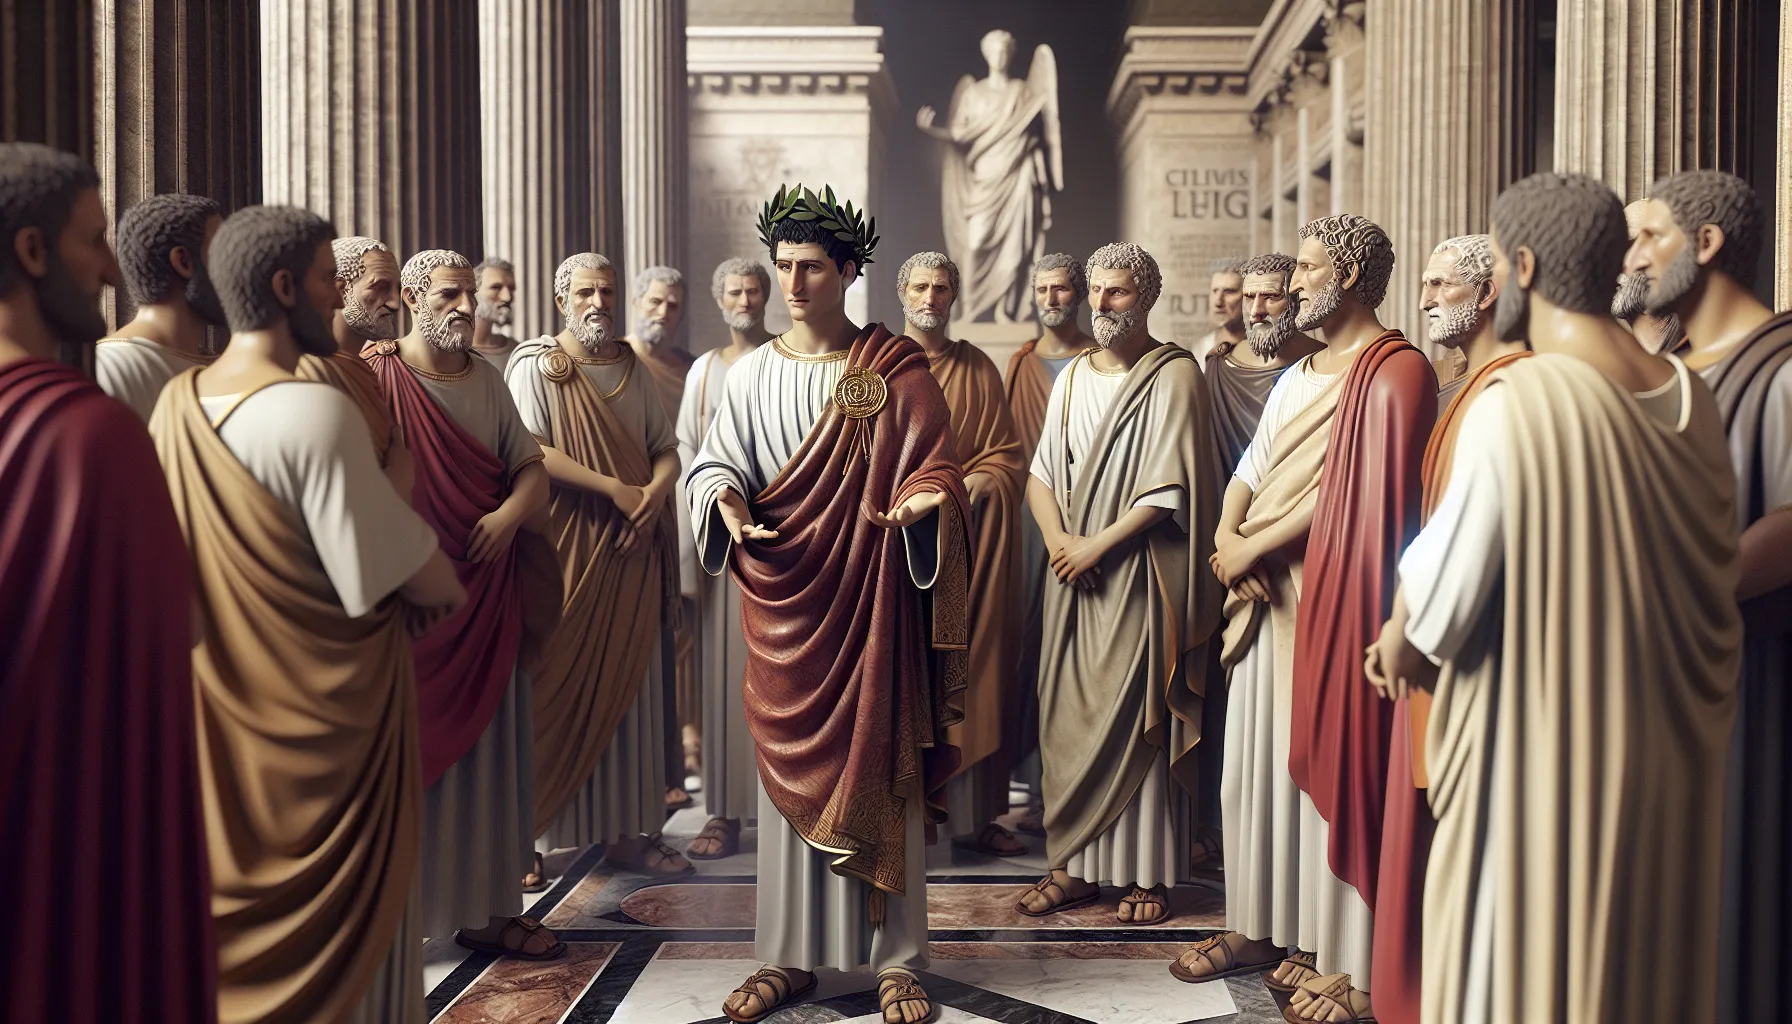 Representación de Julio César y personajes bíblicos en arte antiguo.